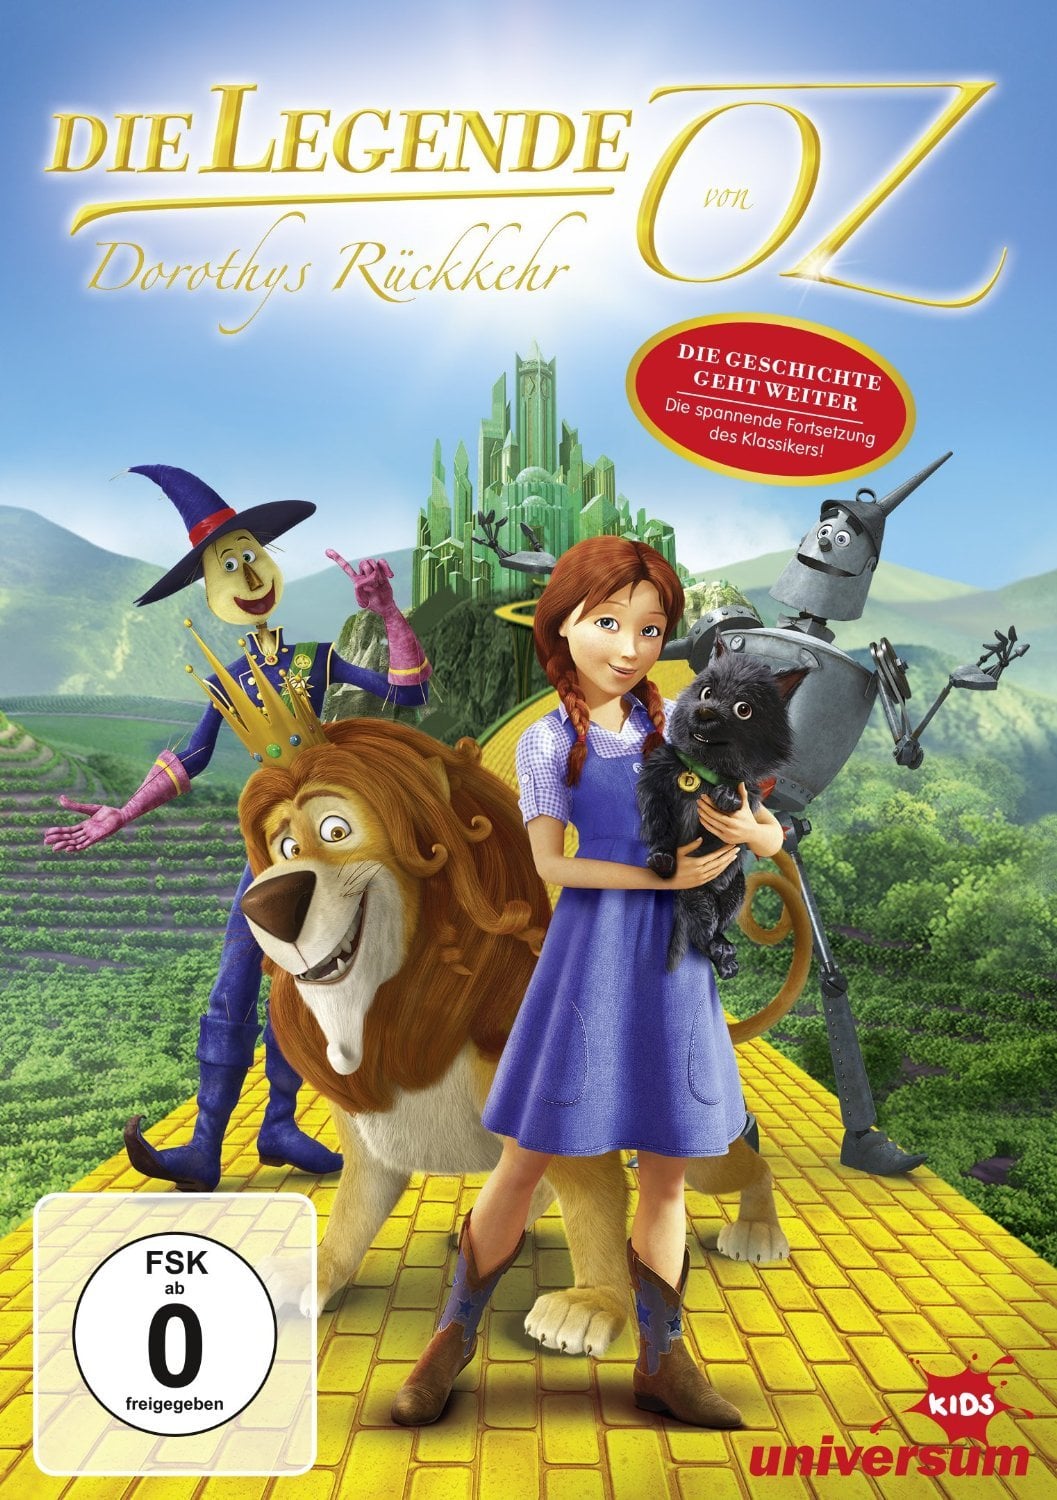 Plakat von "Die Legende von Oz - Dorothys Rückkehr"